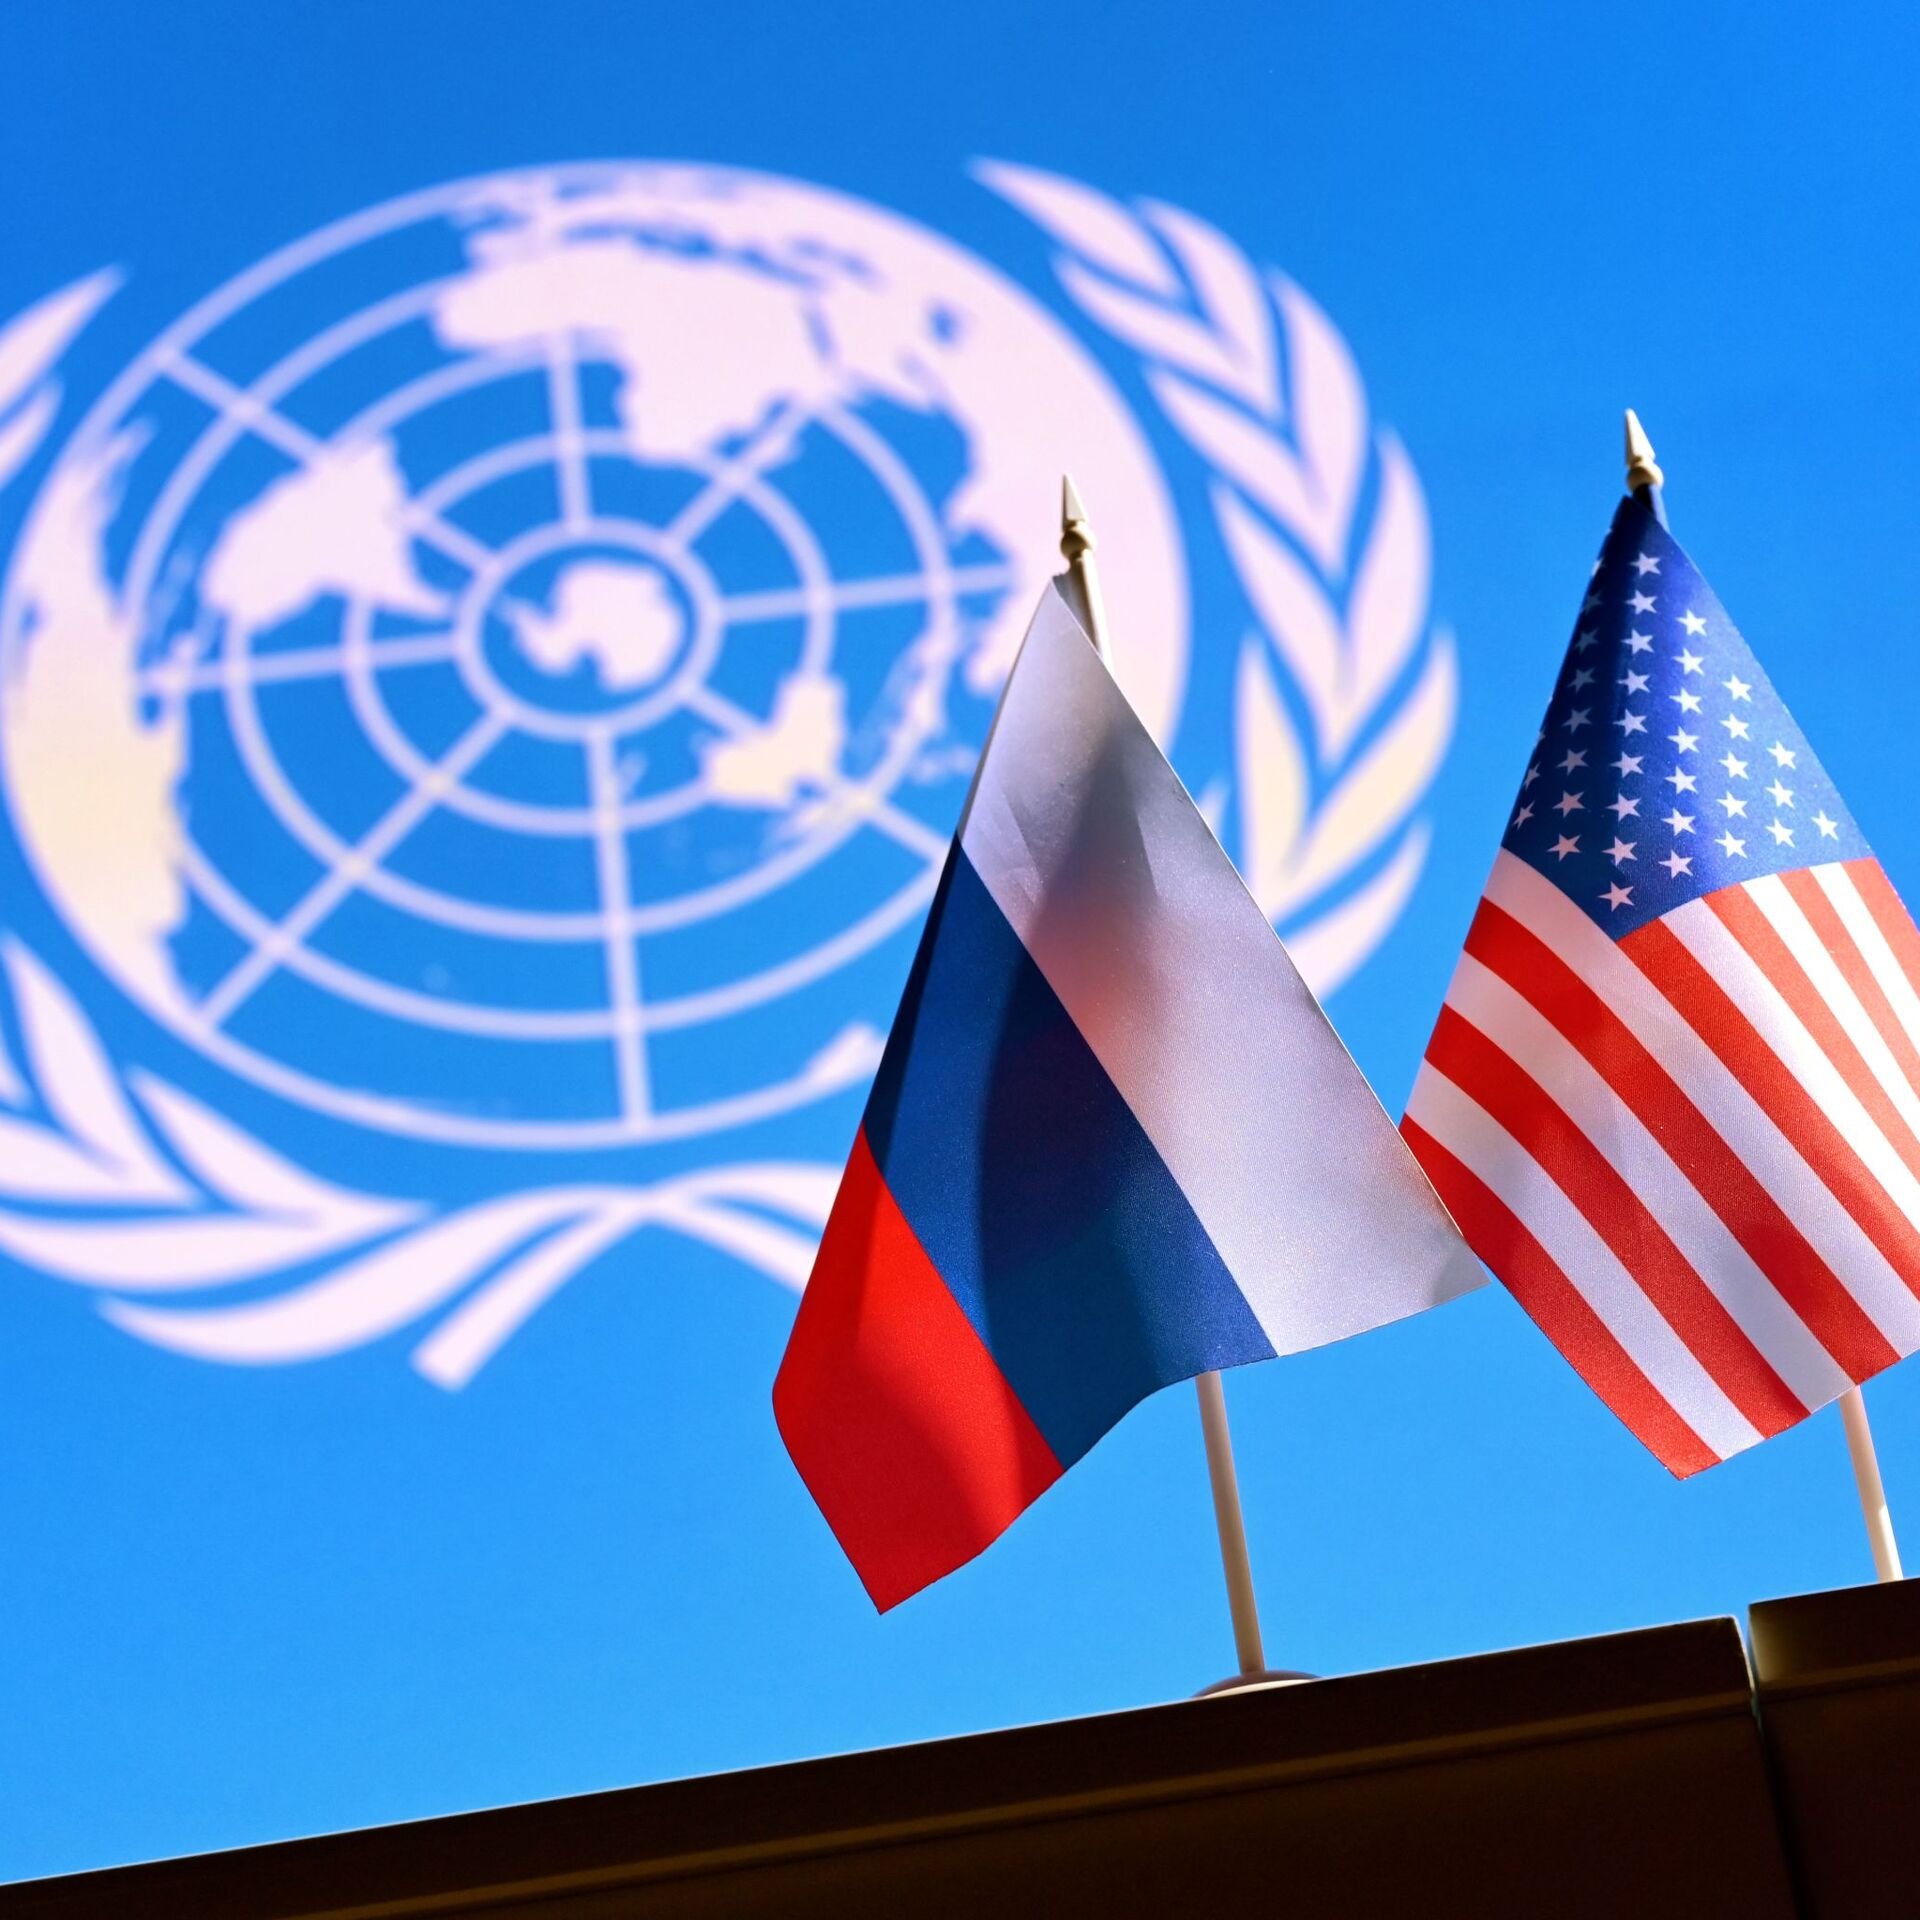 Ռուսաստանն ու ԱՄՆ-ը պետք է անհապաղ վերադառնան սպառազինությունների վերահսկման երկխոսությանը՝ աղետալի հետևանքներից խուսափելու համար․ ՄԱԿ